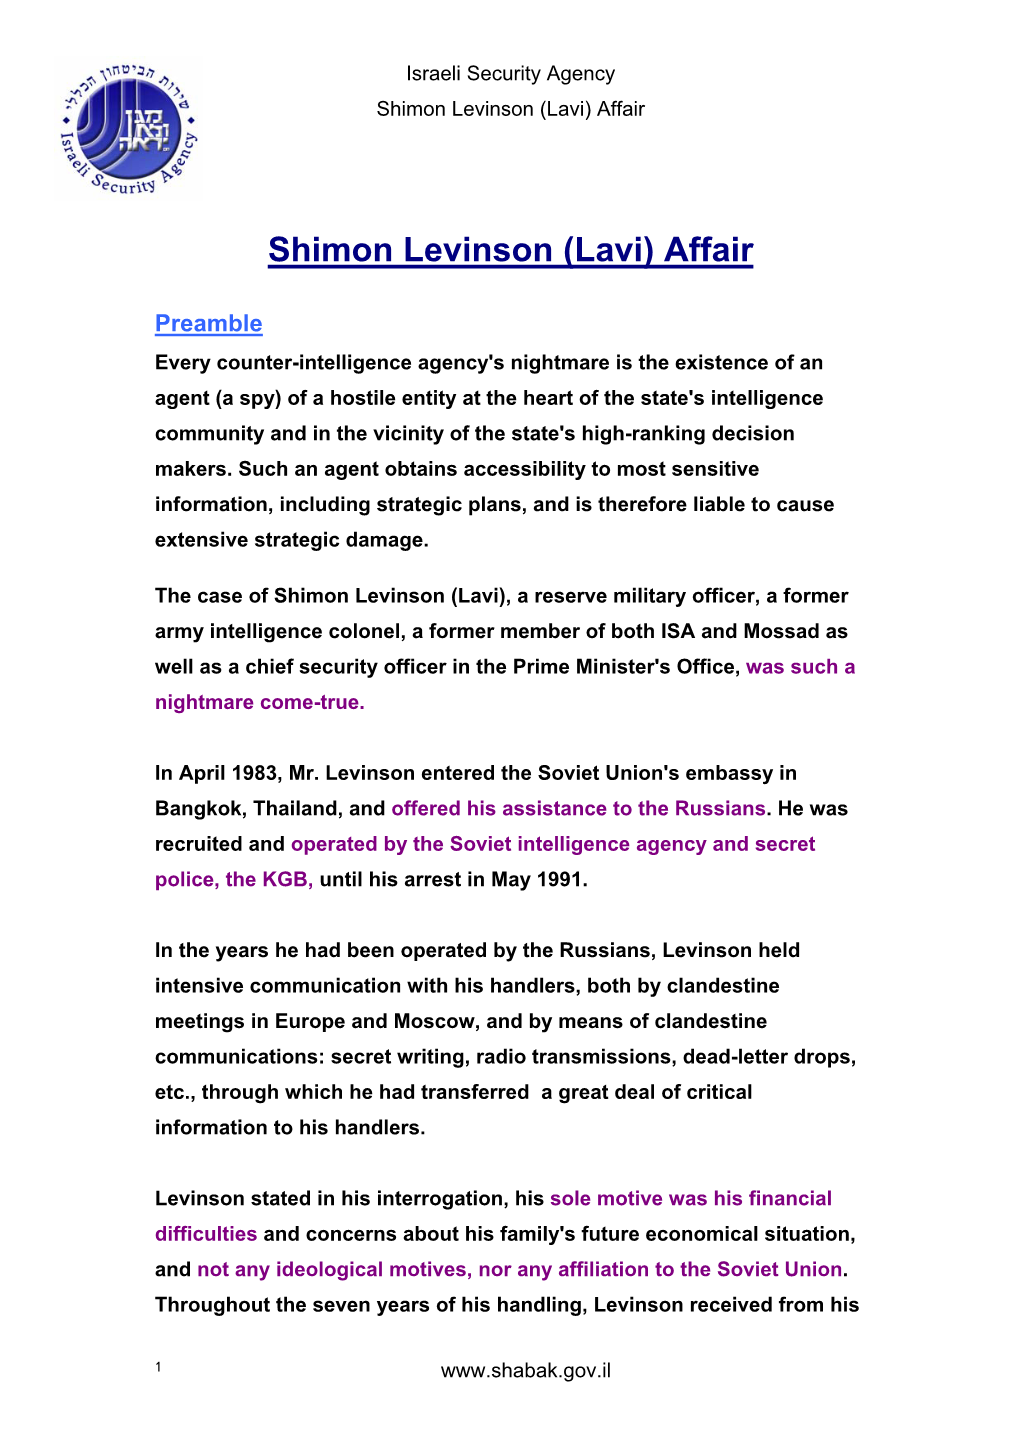 Shimon Levinson (Lavi) Affair